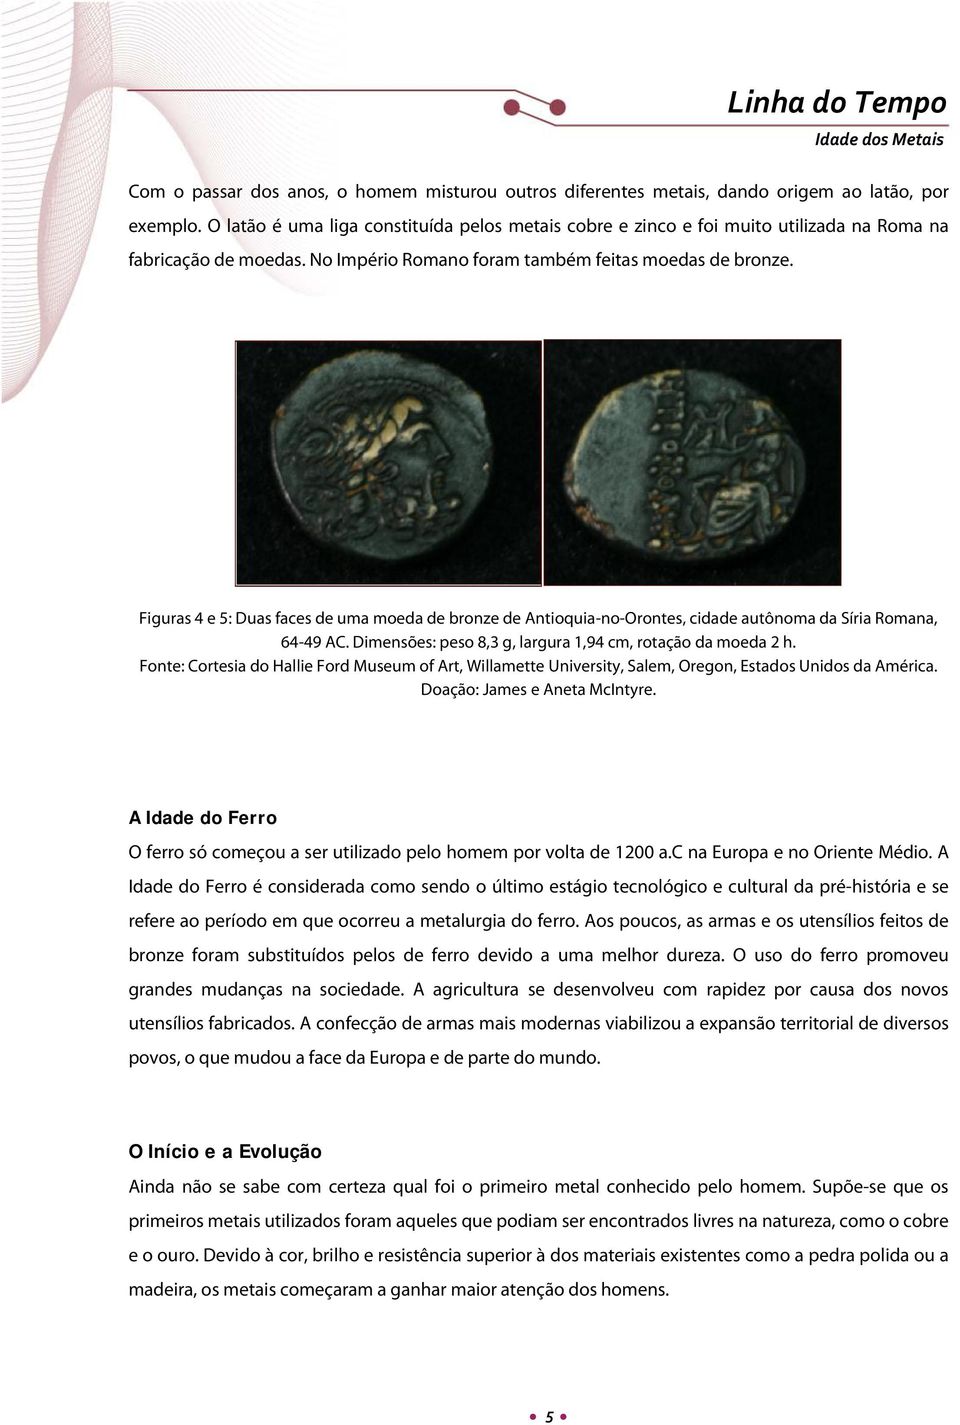 Figuras 4 e 5: Duas faces de uma moeda de bronze de Antioquia-no-Orontes, cidade autônoma da Síria Romana, 64-49 AC. Dimensões: peso 8,3 g, largura 1,94 cm, rotação da moeda 2 h.